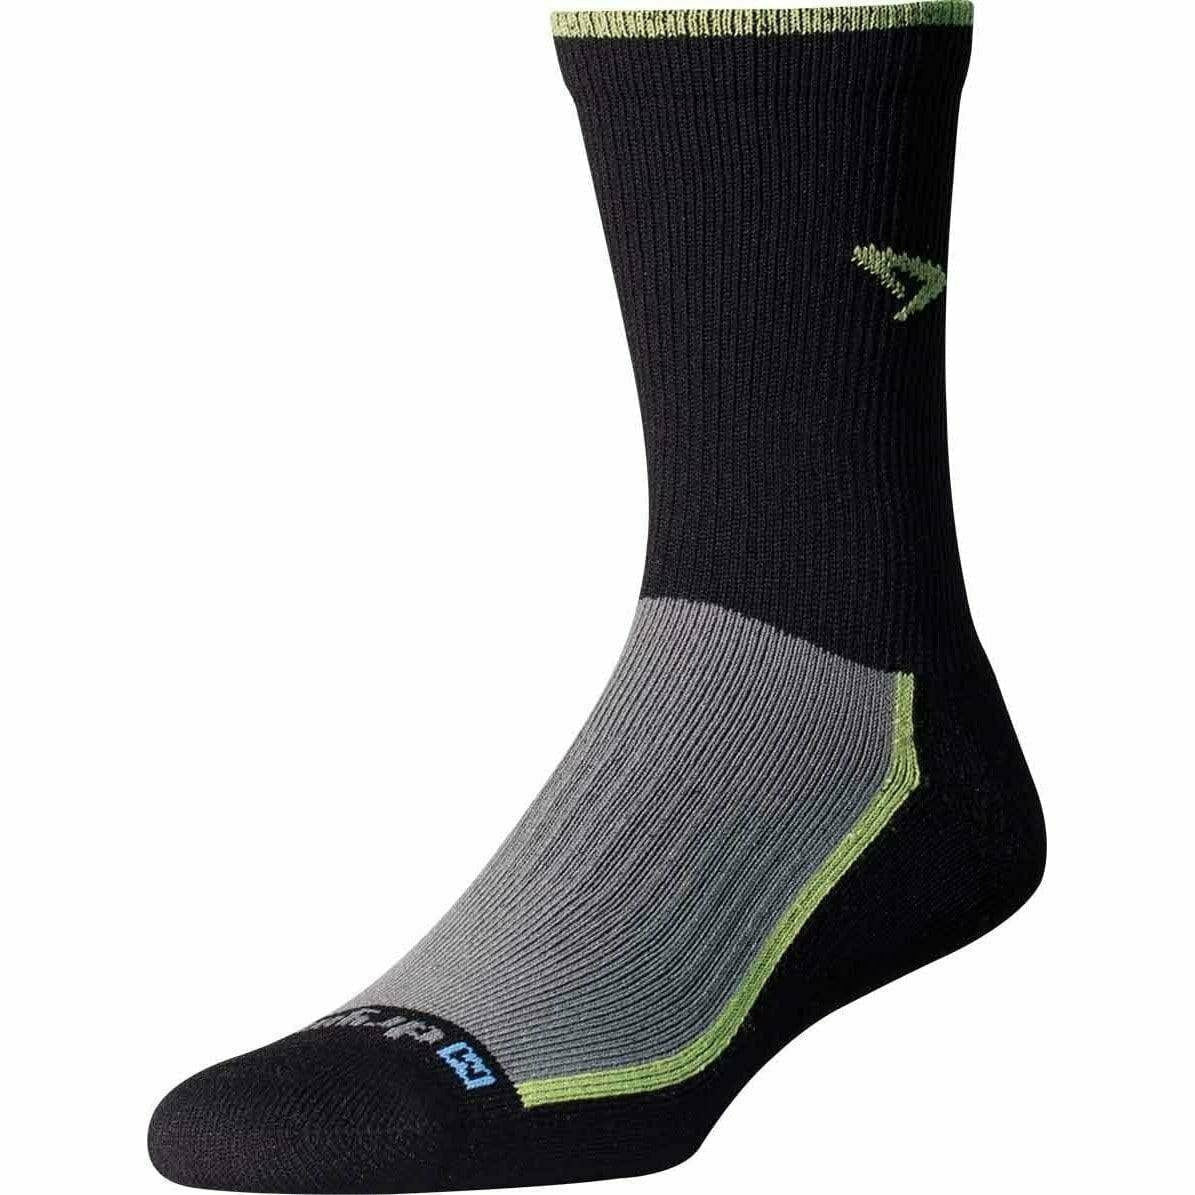 Drymax Trail Run Crew Socks  -  Small / Lime/Black